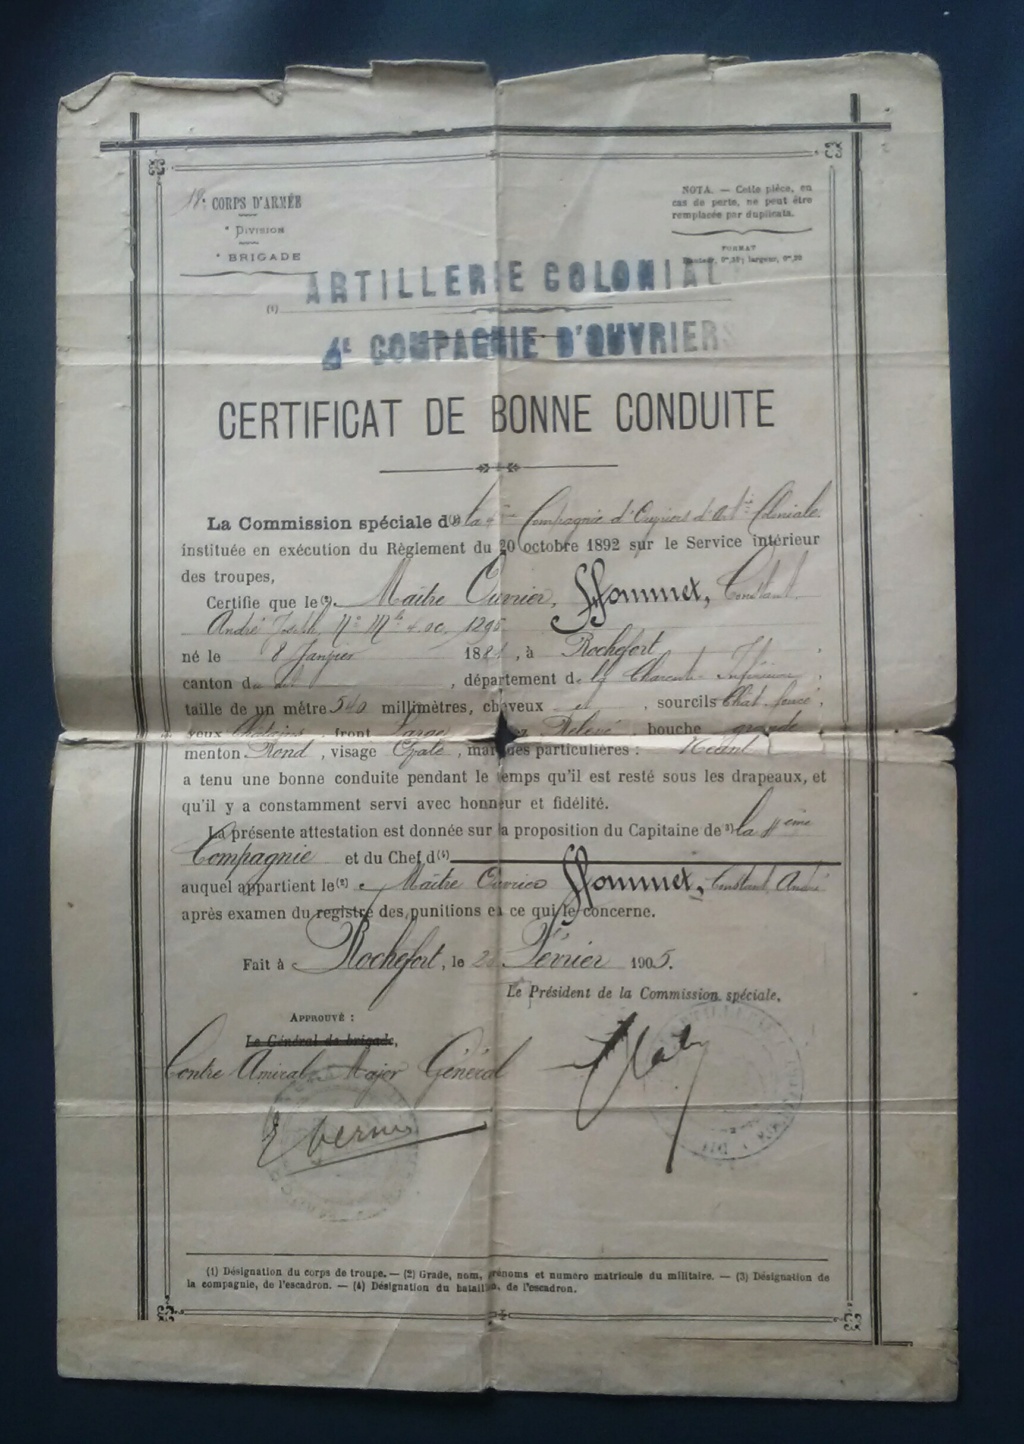 4e compagnie d'ouvriers d'artillerie coloniale - certificat bonne conduite  1905 Img_2860